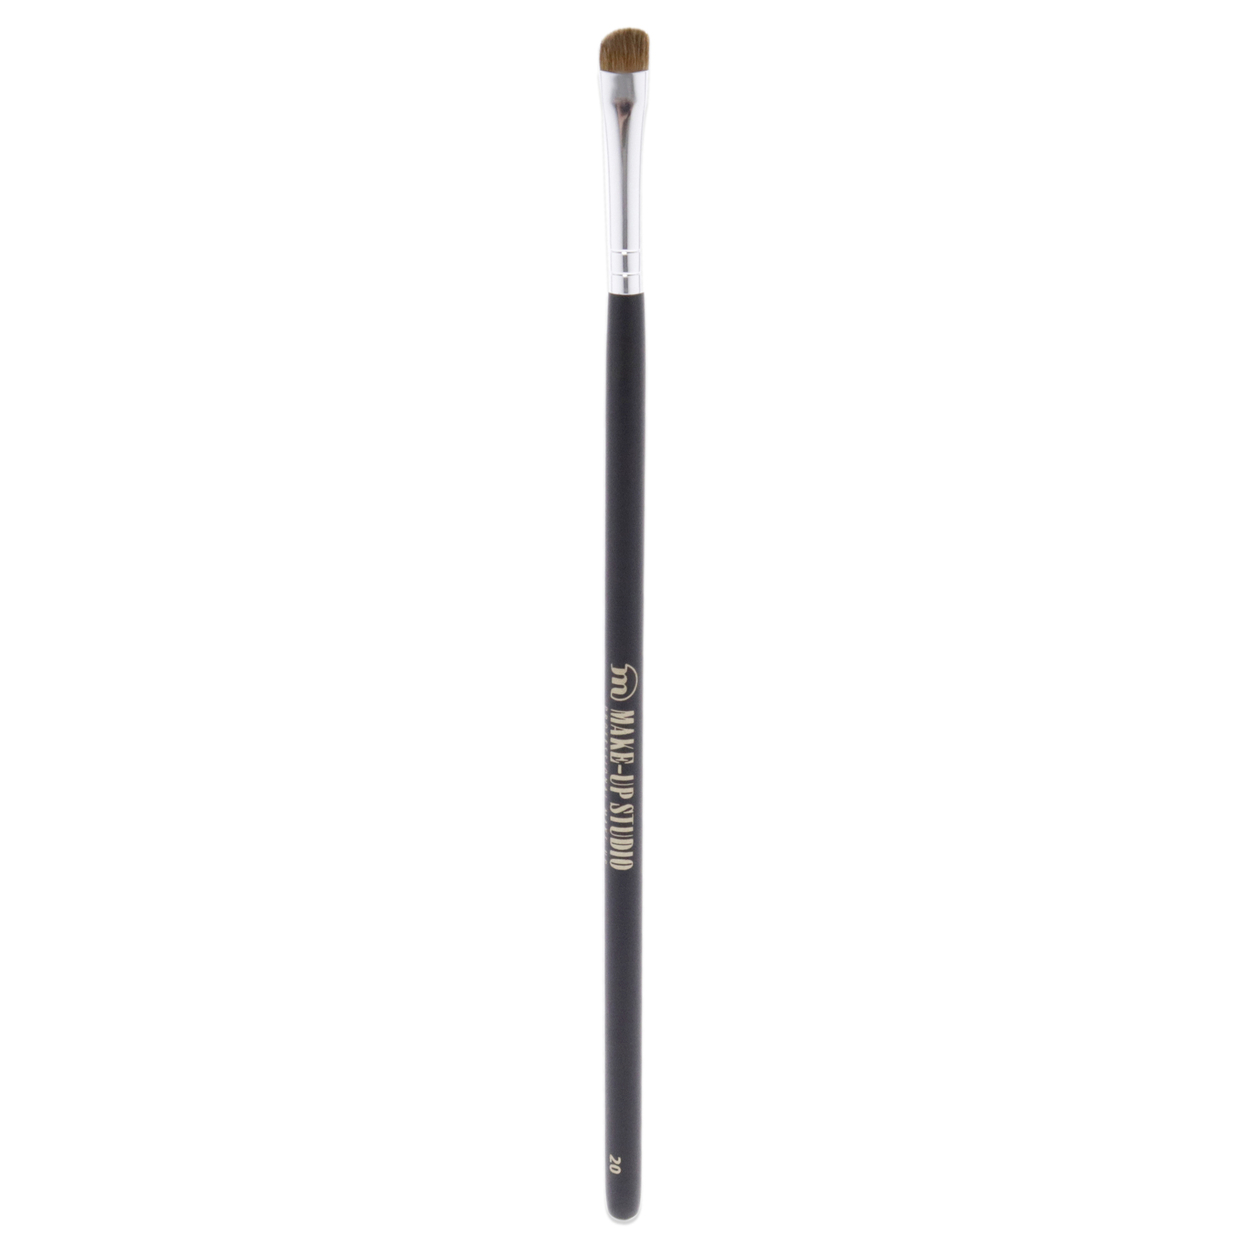 Make-Up Studio Eyeshadow Angle Shaped Brush - 20 1 Pc